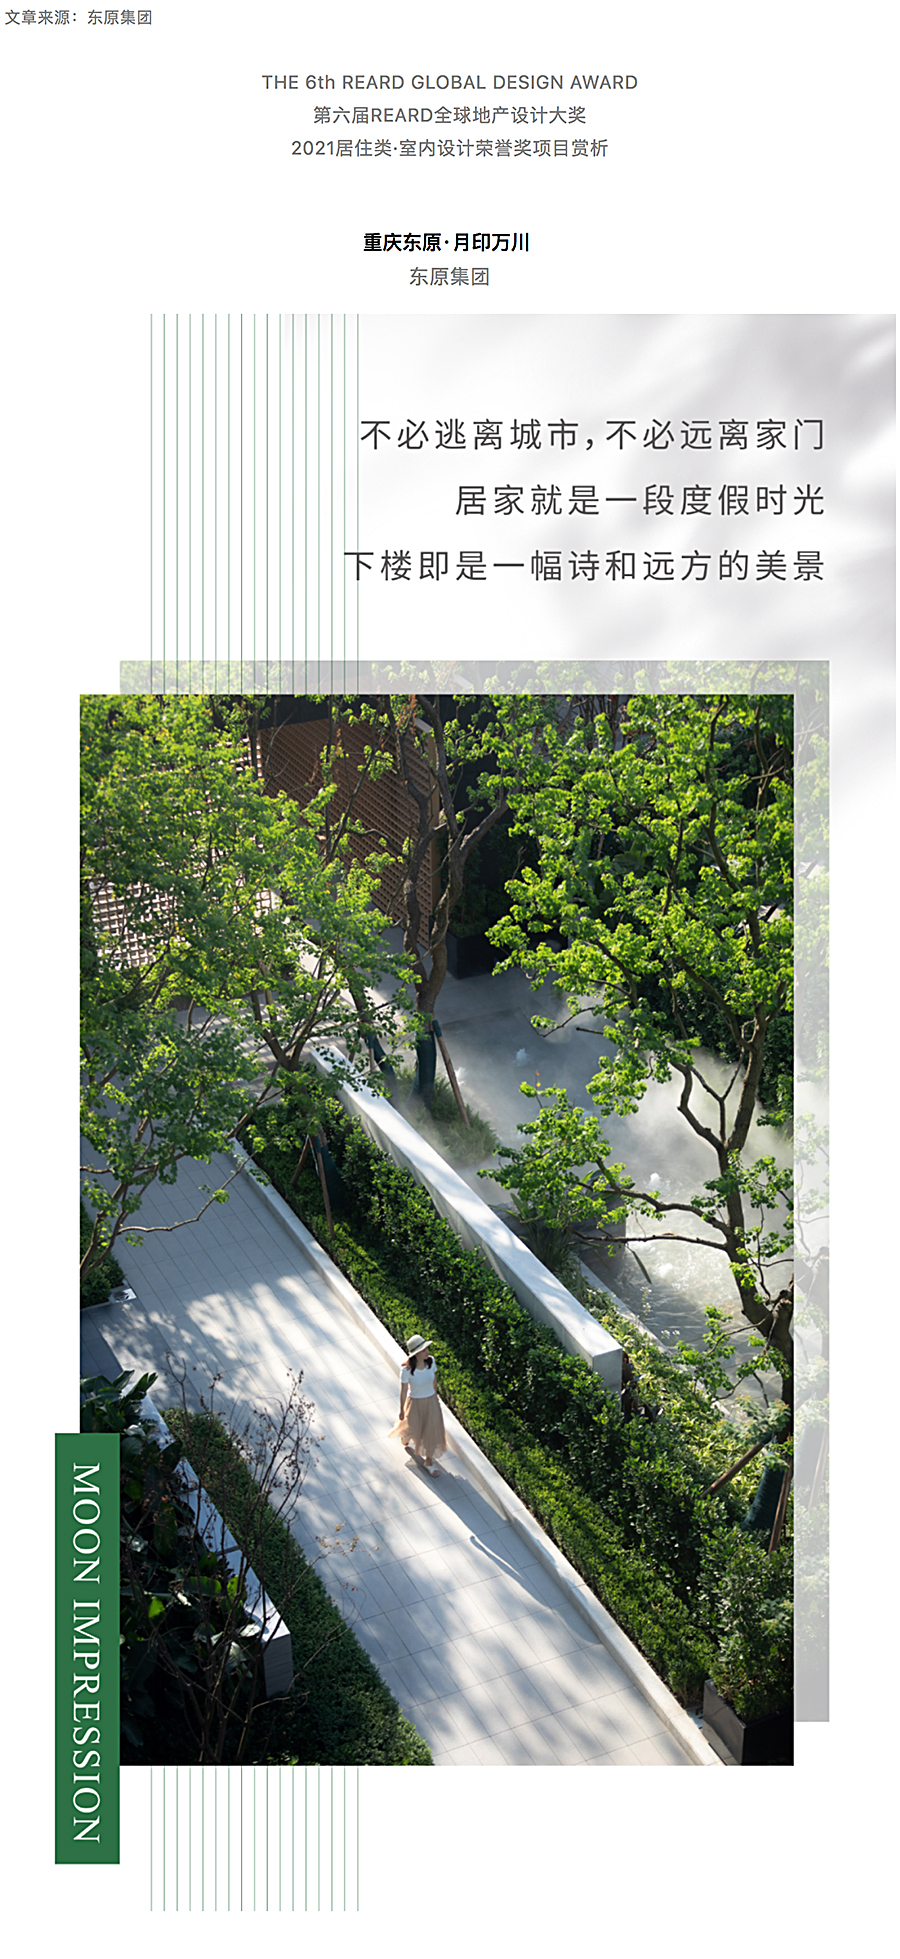 创新洋房社区-引领当代生活-_-重庆东原·月印万川_0000_图层-1.jpg